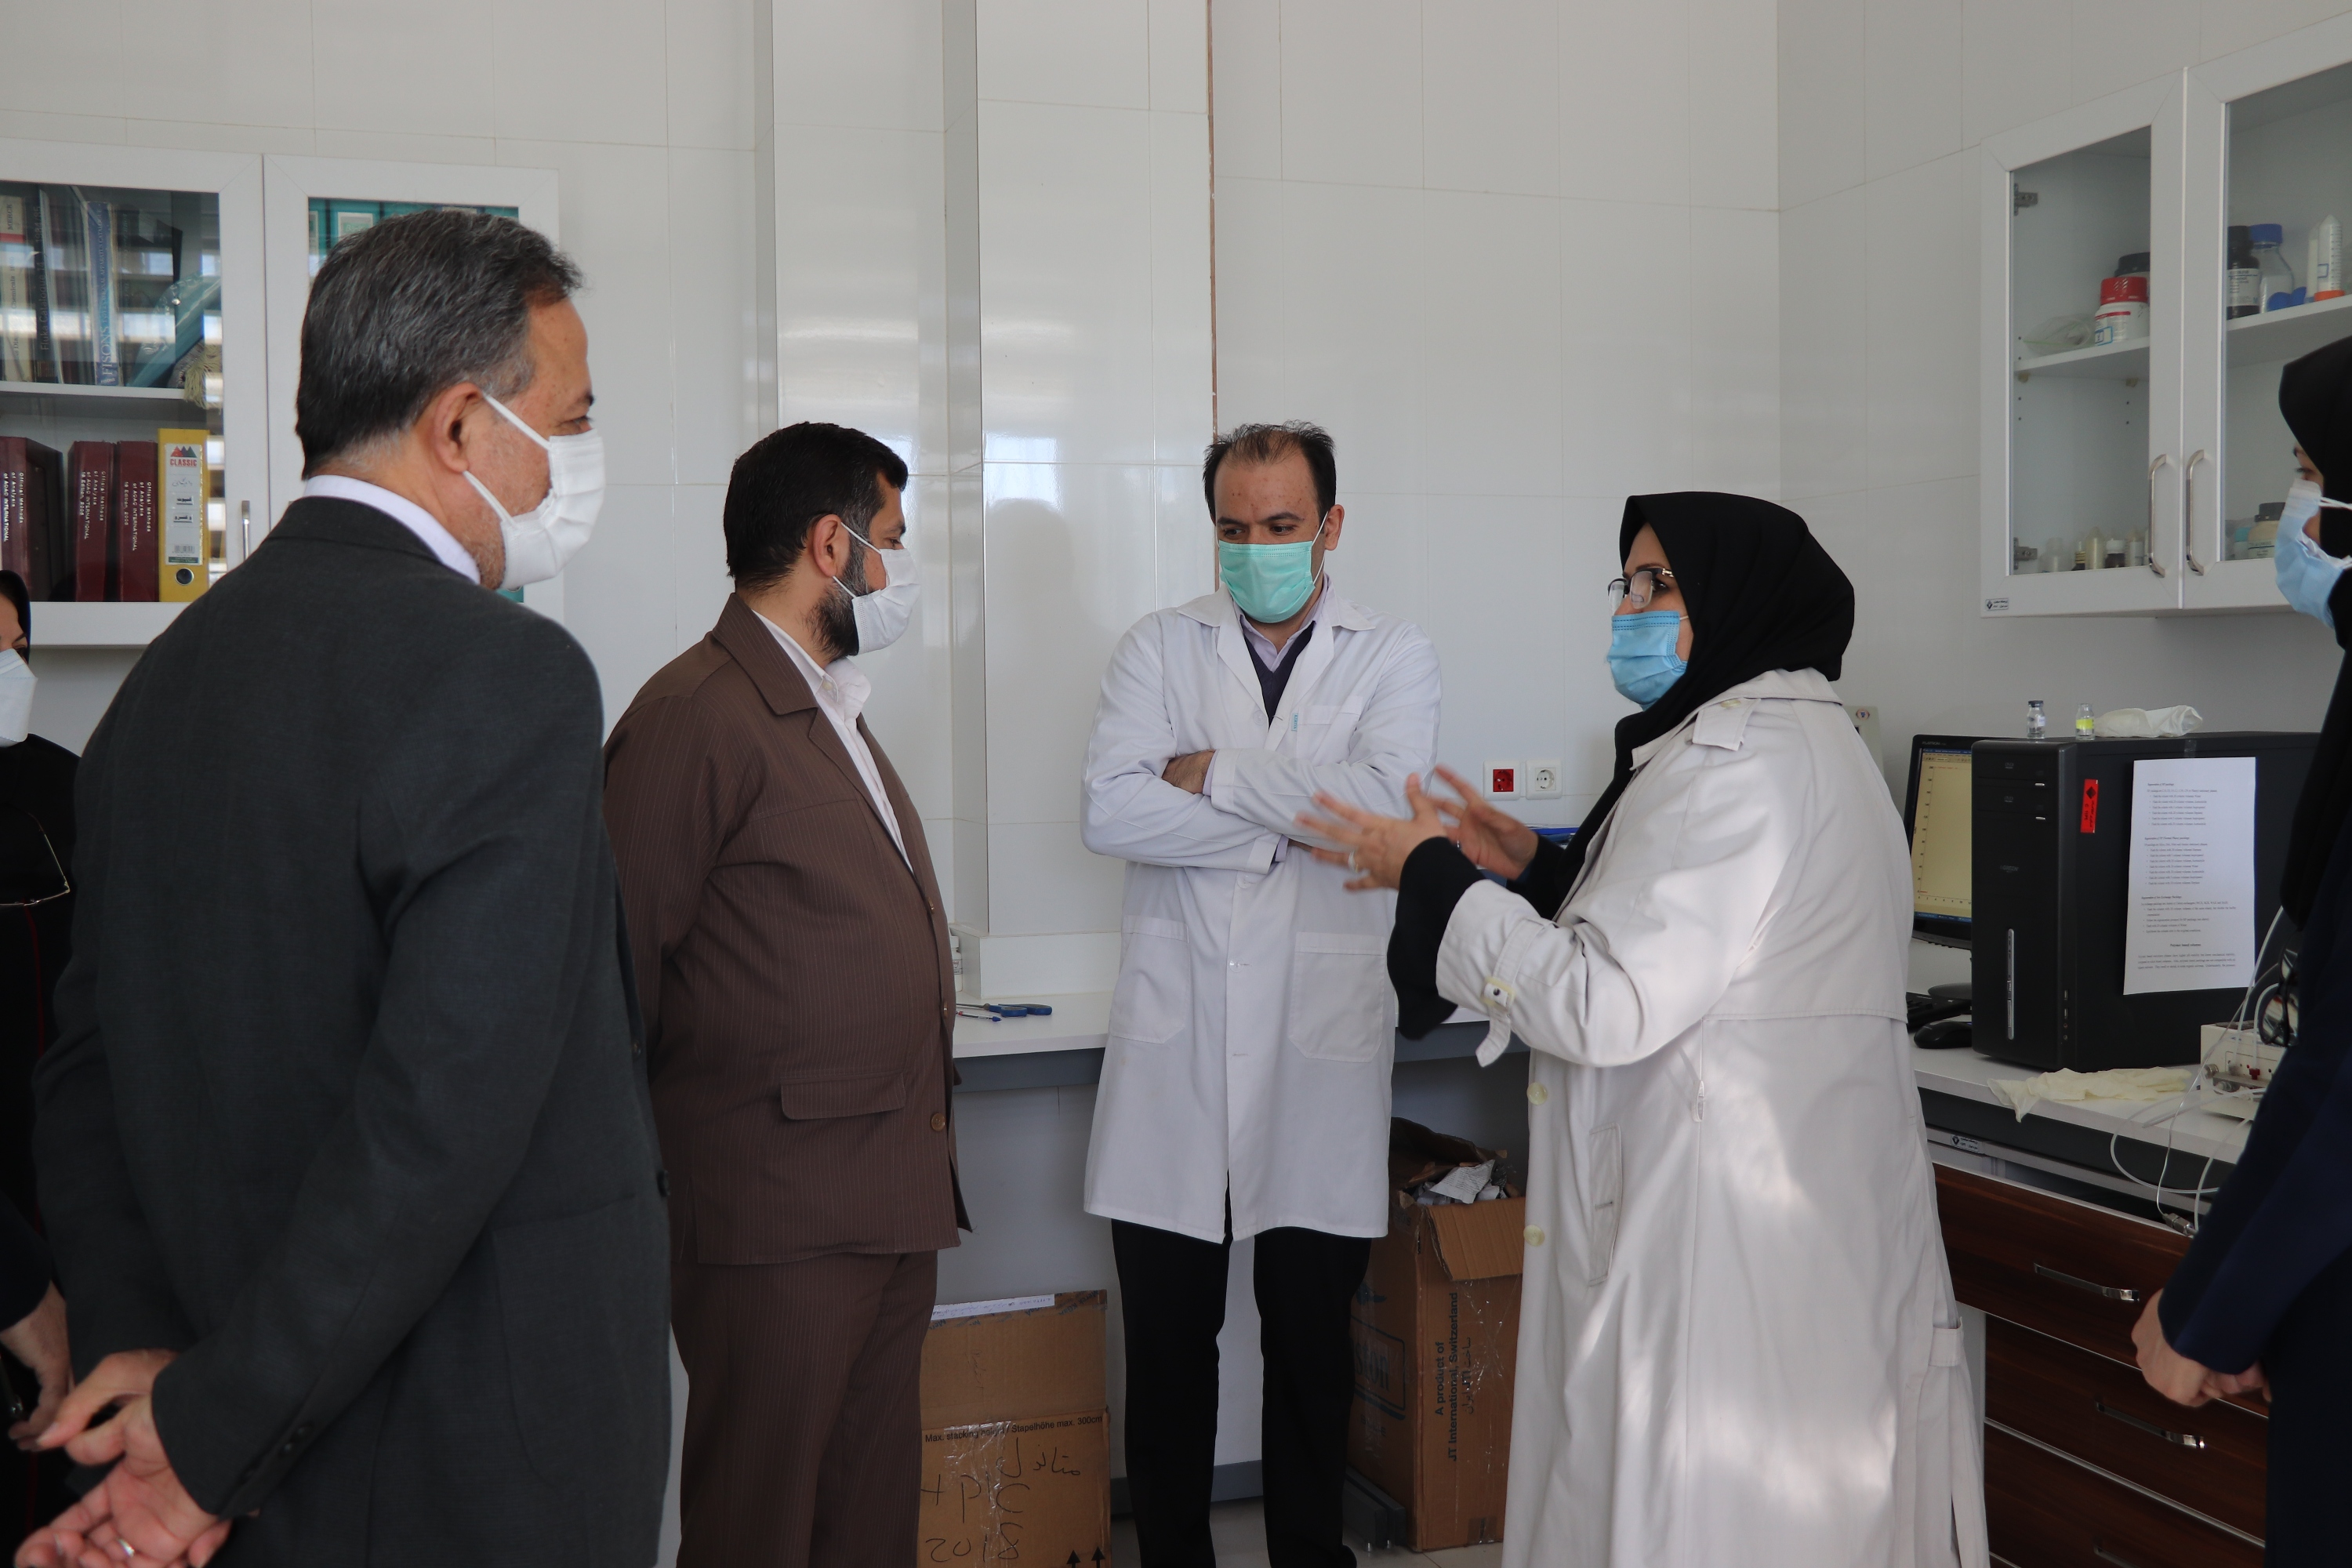 غلامرضا شریعتی، رییس سازمان ملی استاندارد ایران با هیات همراه از برخی آزمایشگاه های پژوهشگاه استاندارد بازدید کرد